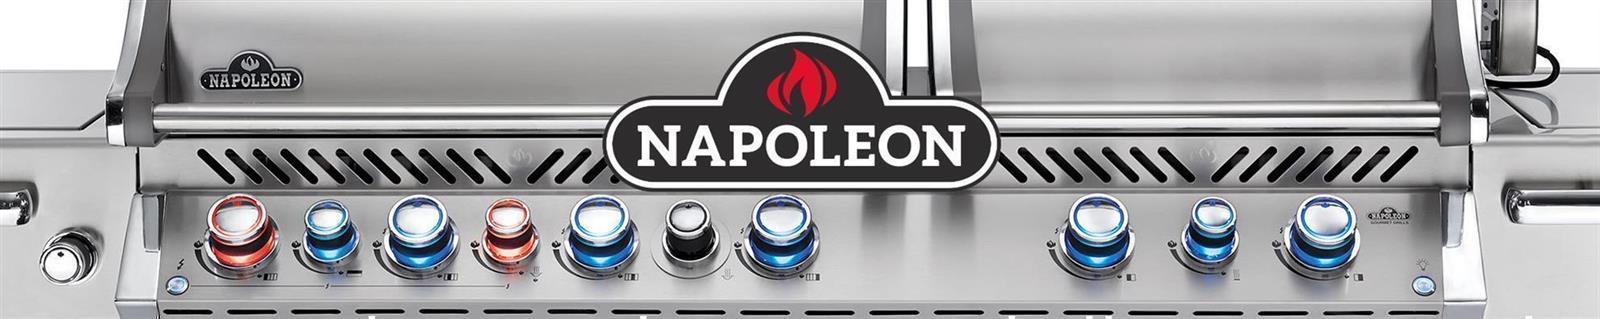 Napoleon - 700-Series einbau Power-Wokbrenner